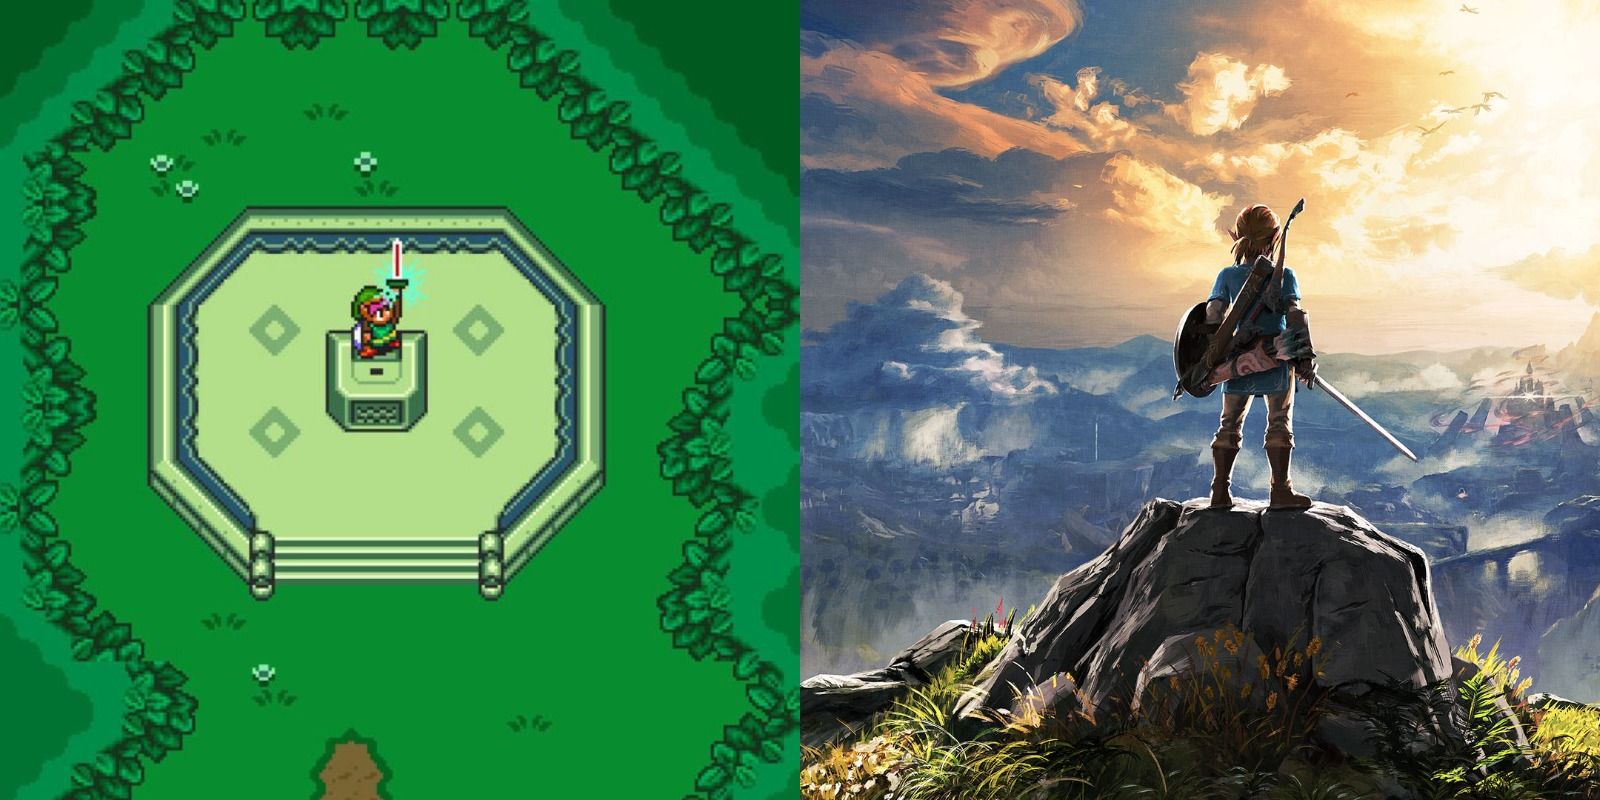 The Best Hyrule Fields in Zelda Games